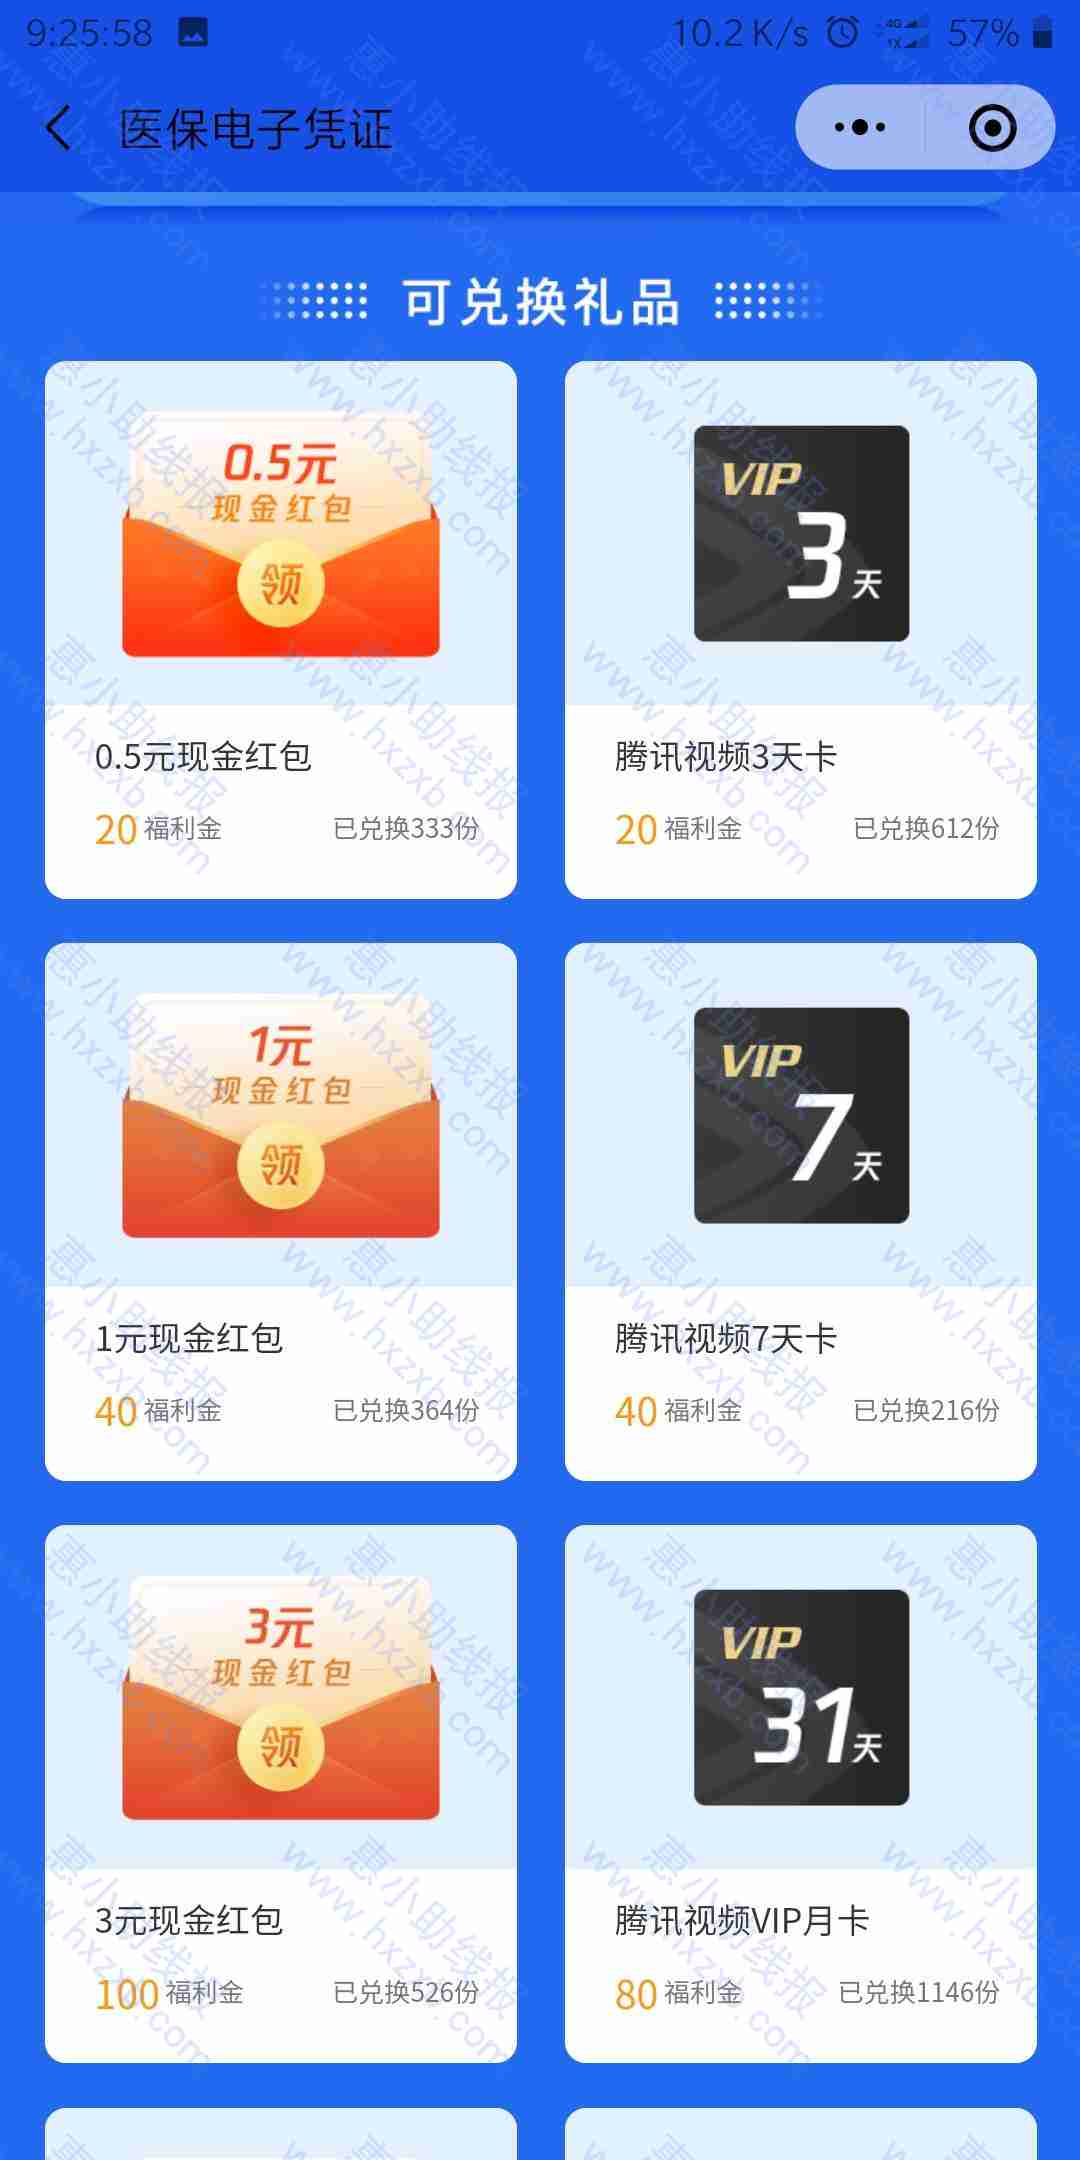 ［虚拟物品］领腾讯视频vip3天，7天，一个月还可以兑换现金红包